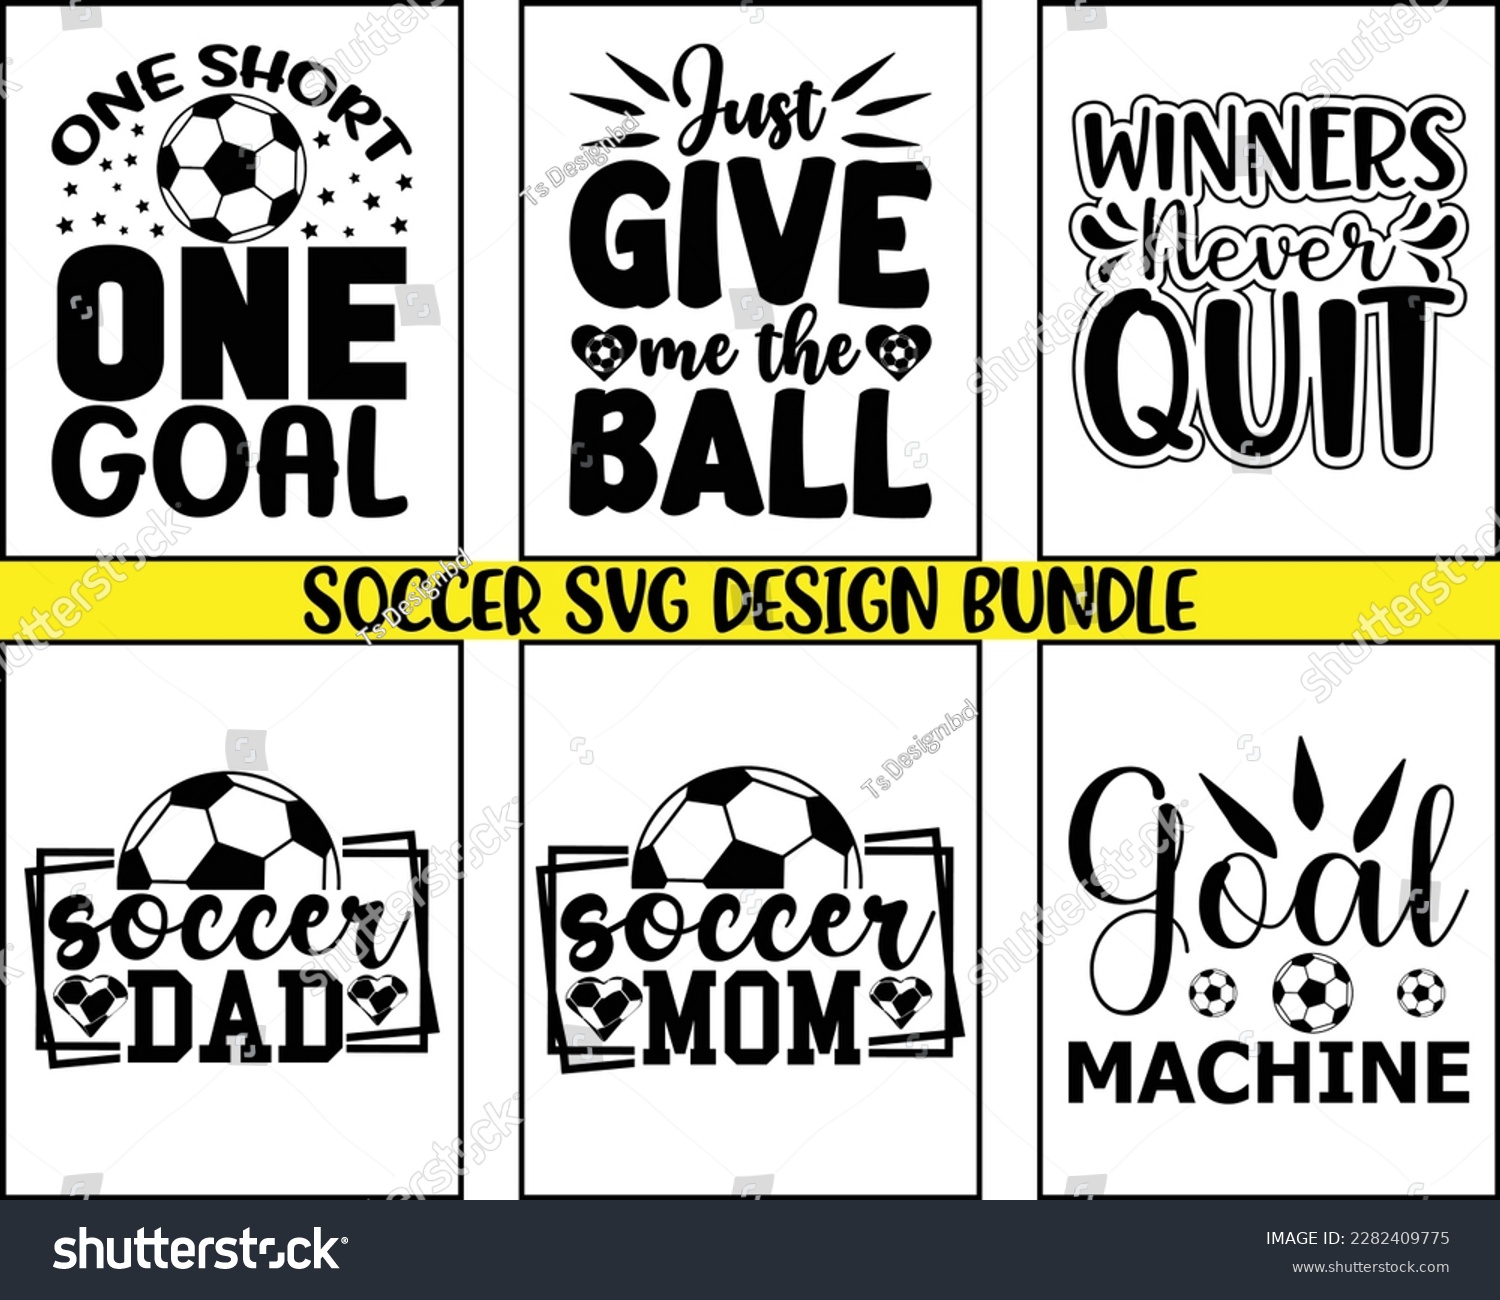 SVG of Soccer svg Bundle Design,Soccer Mom Svg Bundle,Retro Soccer Svg,FootBall Svg,Proud Soccer Svg Bundle,Cut File Cricut,Game Day Svg svg